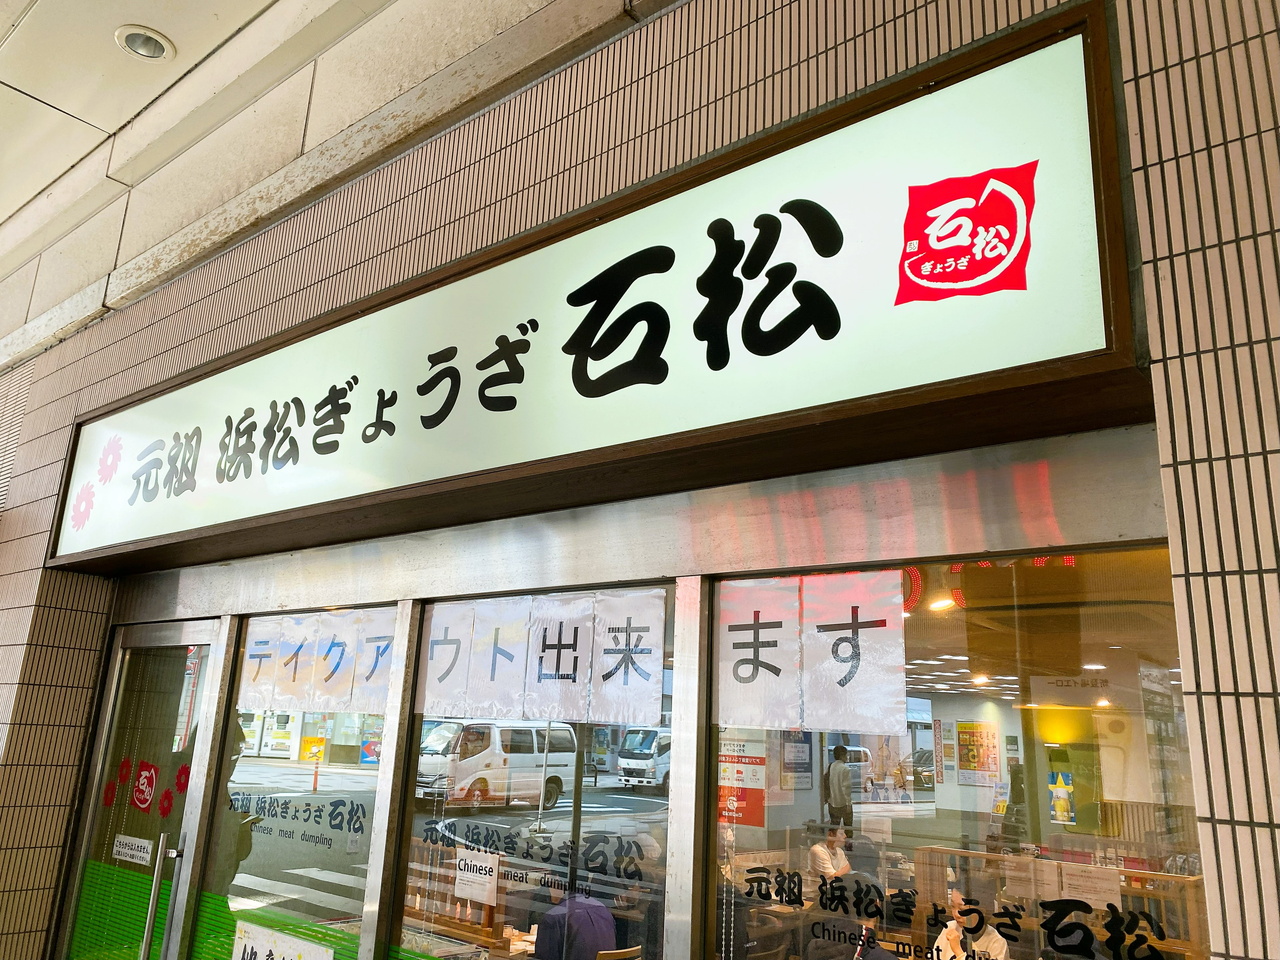 駅の横にあった浜松餃子の店